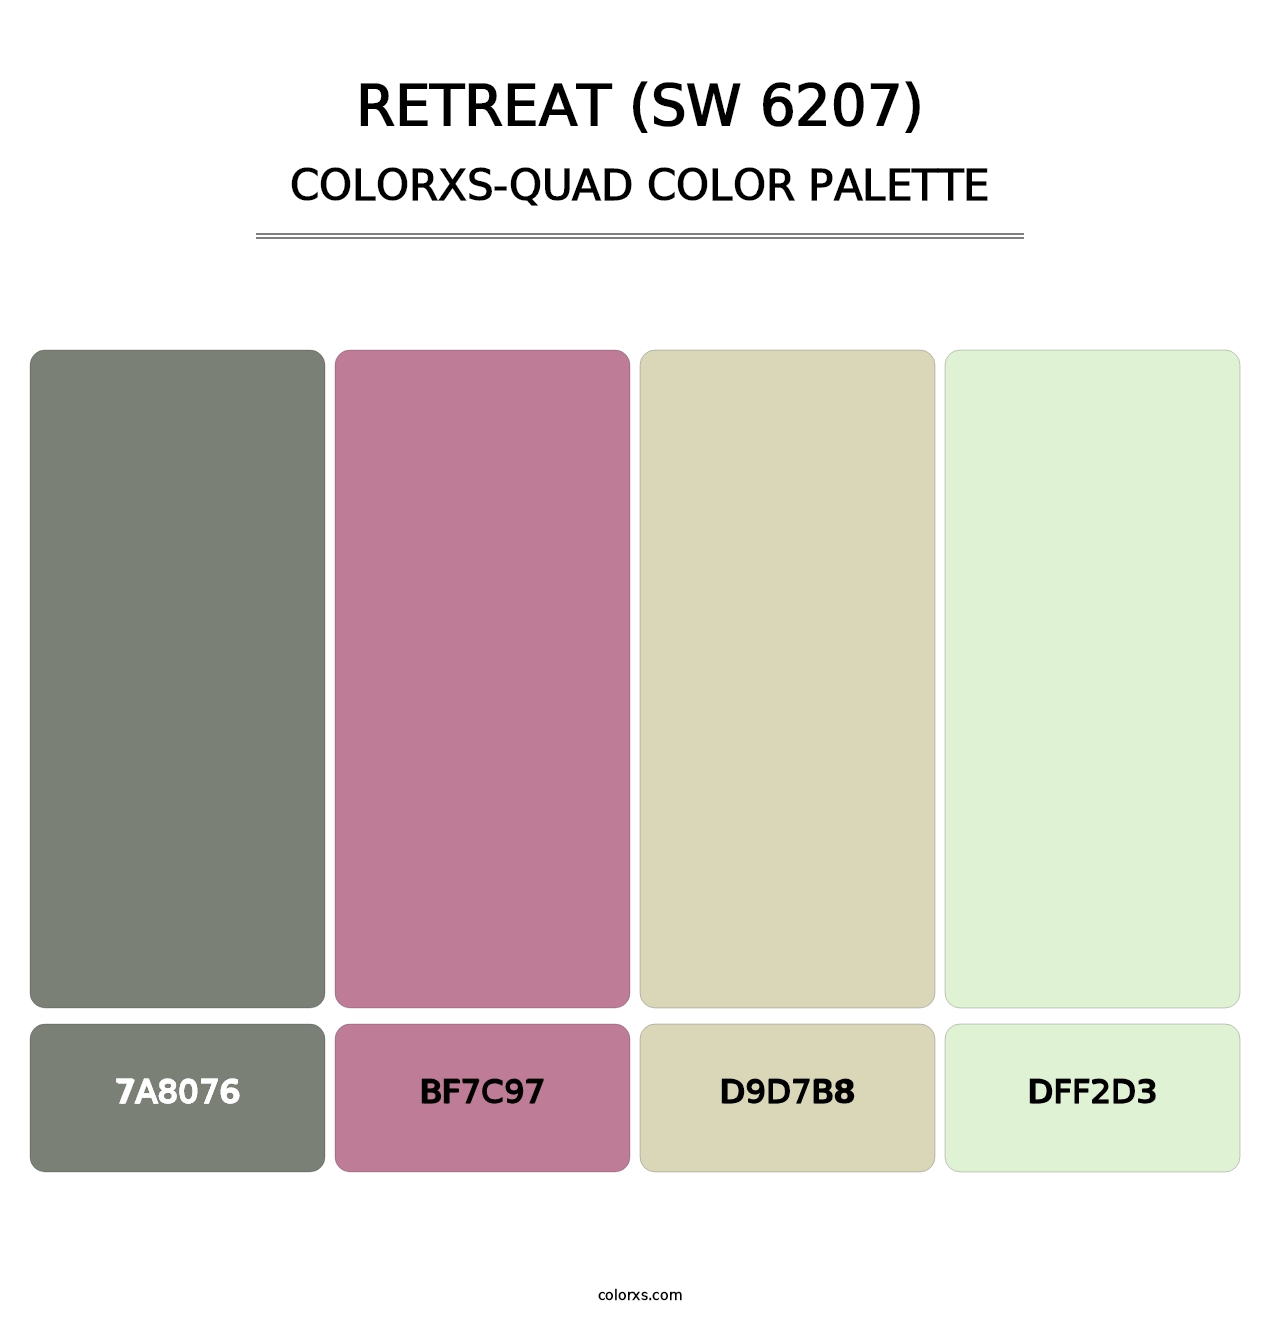 Retreat (SW 6207) - Colorxs Quad Palette